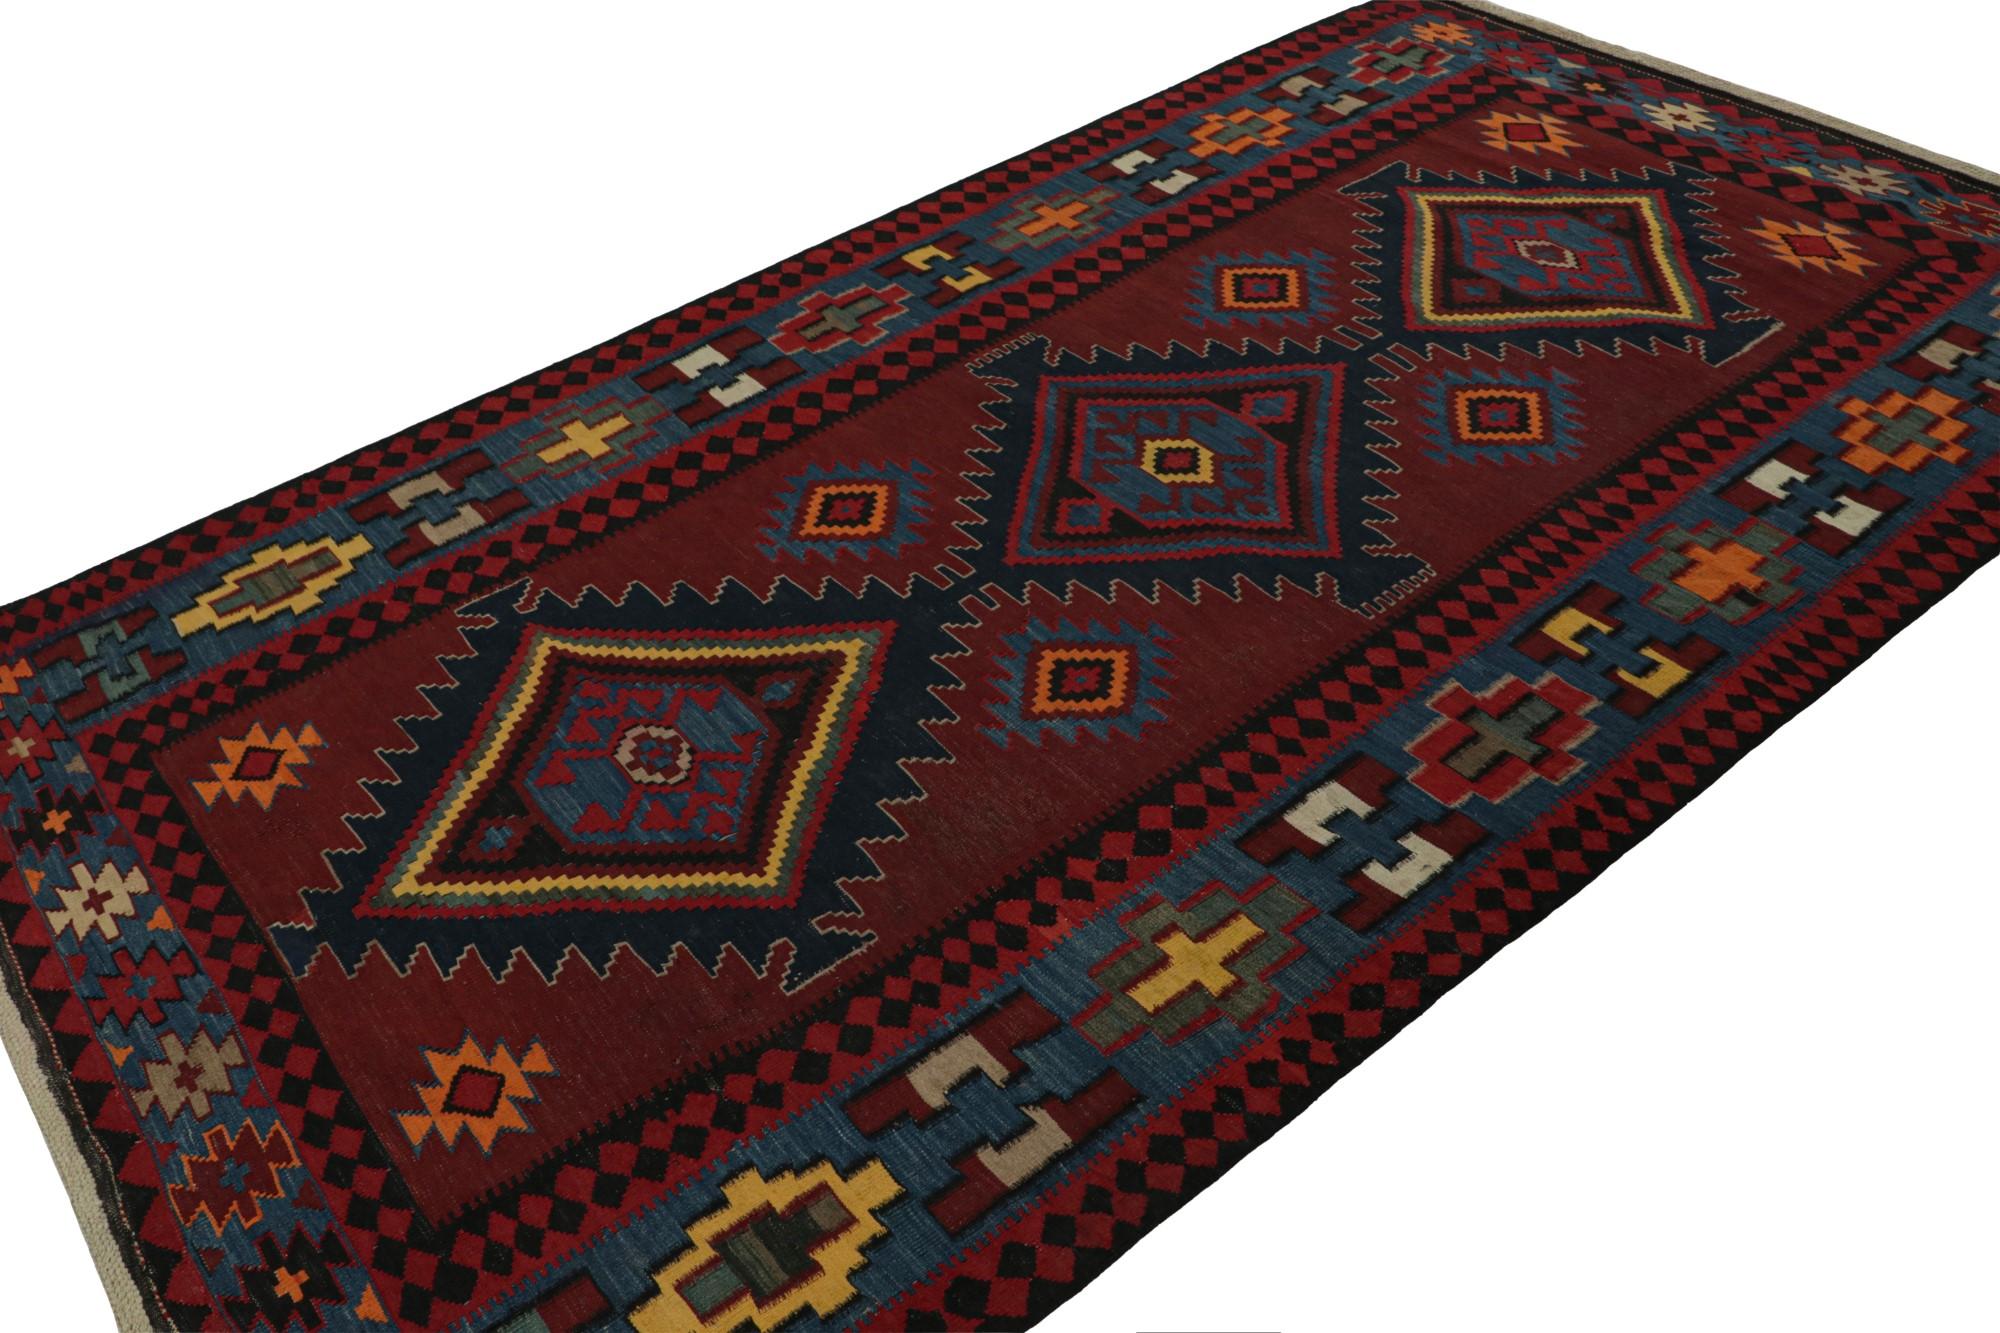 Ce Kilim tribal vintage de 5x9 est un nouvel ajout aux collections du milieu du siècle de Rug & Kilim. Tissé à la main en laine, il provient d'Afghanistan vers 1950-1960.

Sur le Design : 

Ce tissage plat présente des motifs polychromes sur un